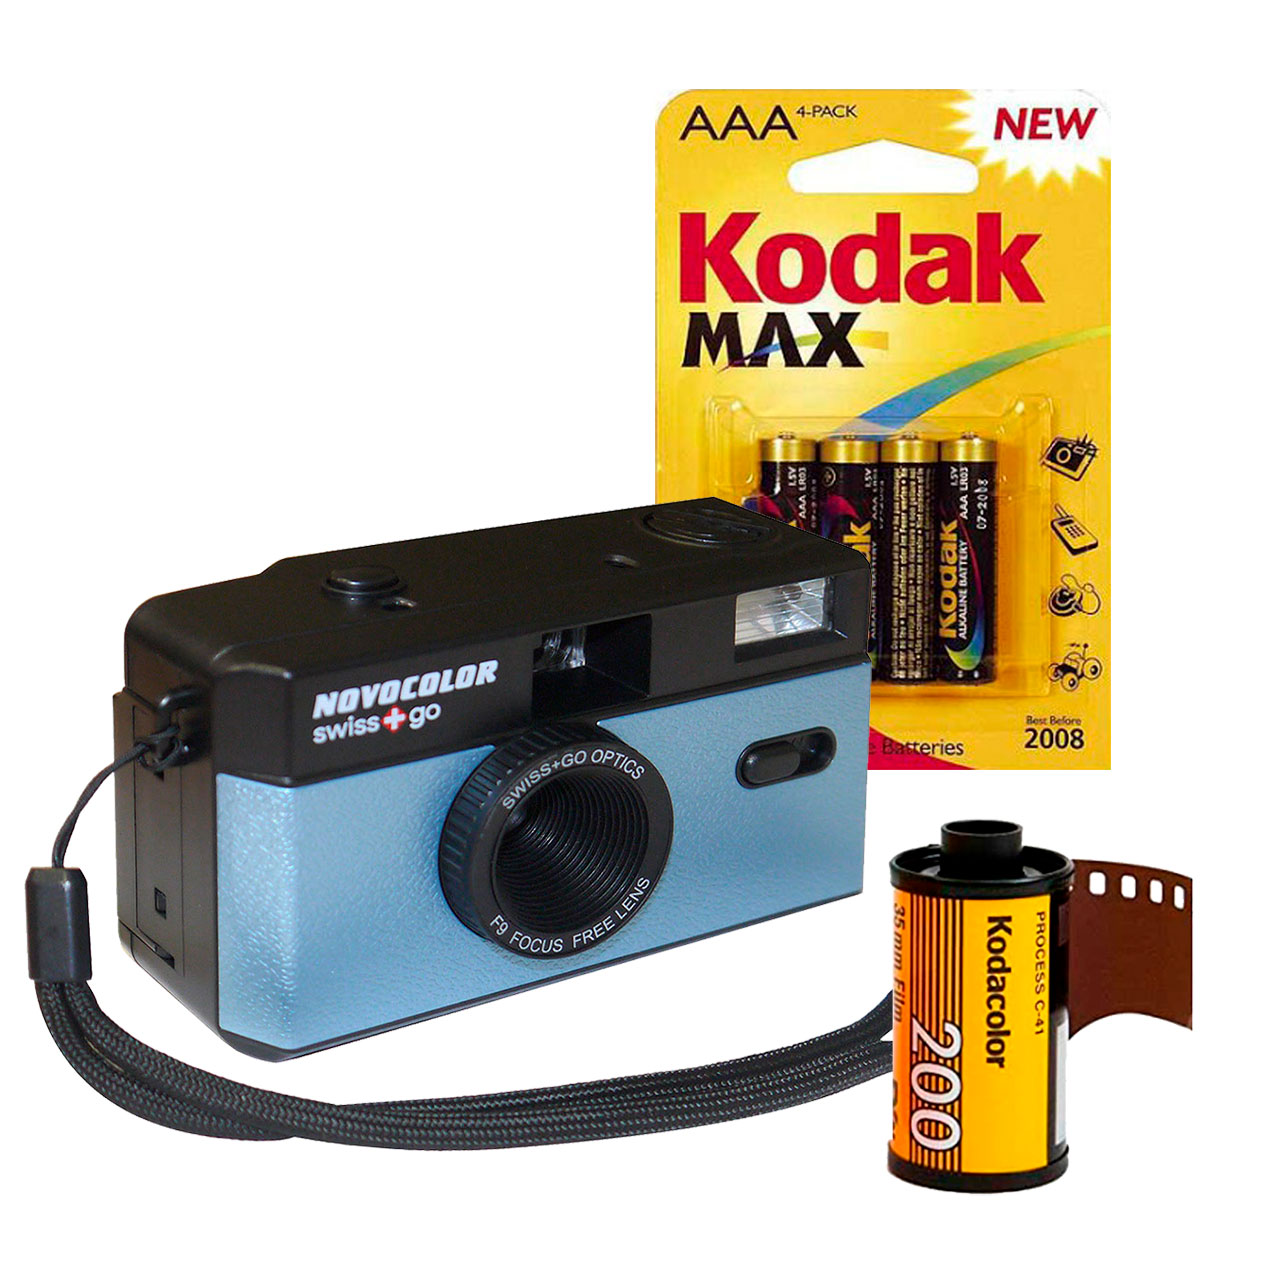 Las mejores ofertas en Cámara fotográfica de un solo uso Kodak